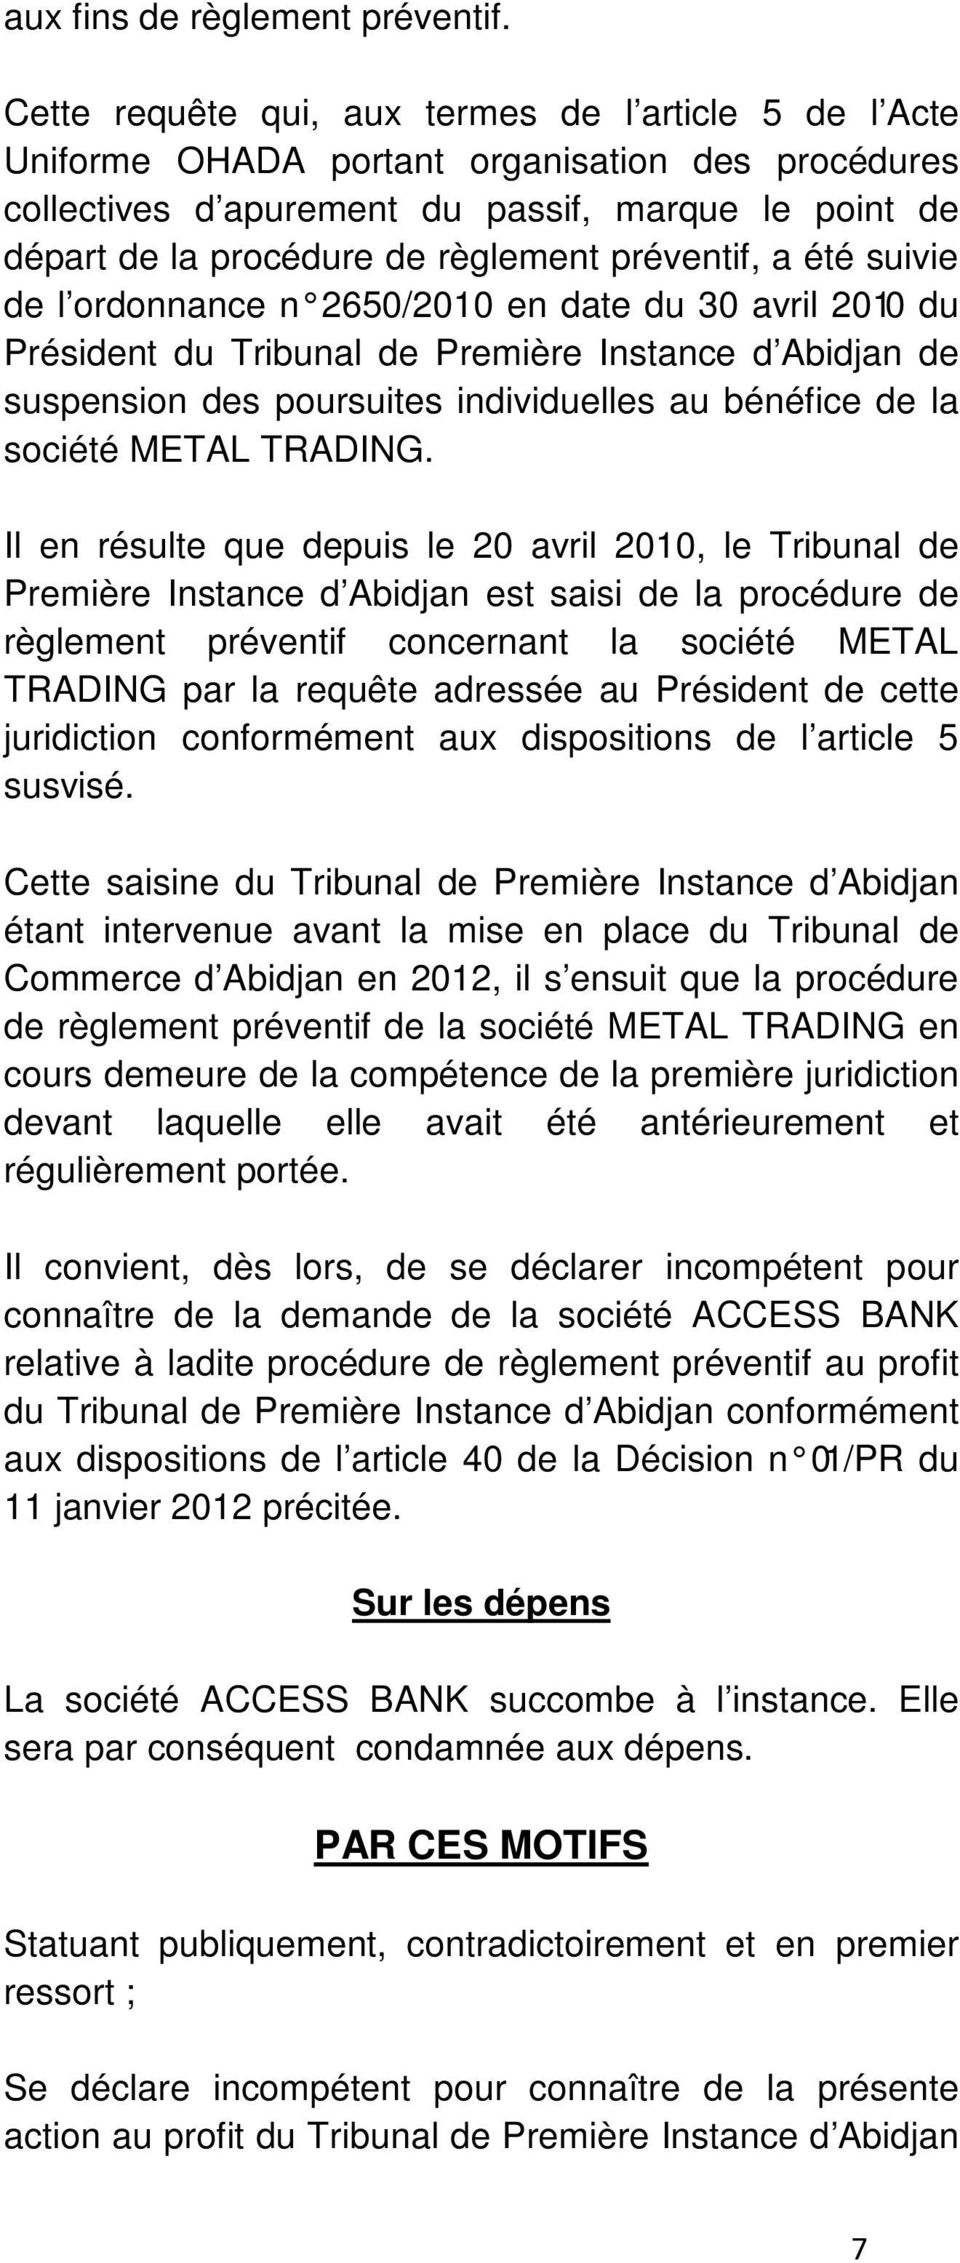 préventif, a été suivie de l ordonnance n 2650/2010 en date du 30 avril 2010 du Président du Tribunal de Première Instance d Abidjan de suspension des poursuites individuelles au bénéfice de la